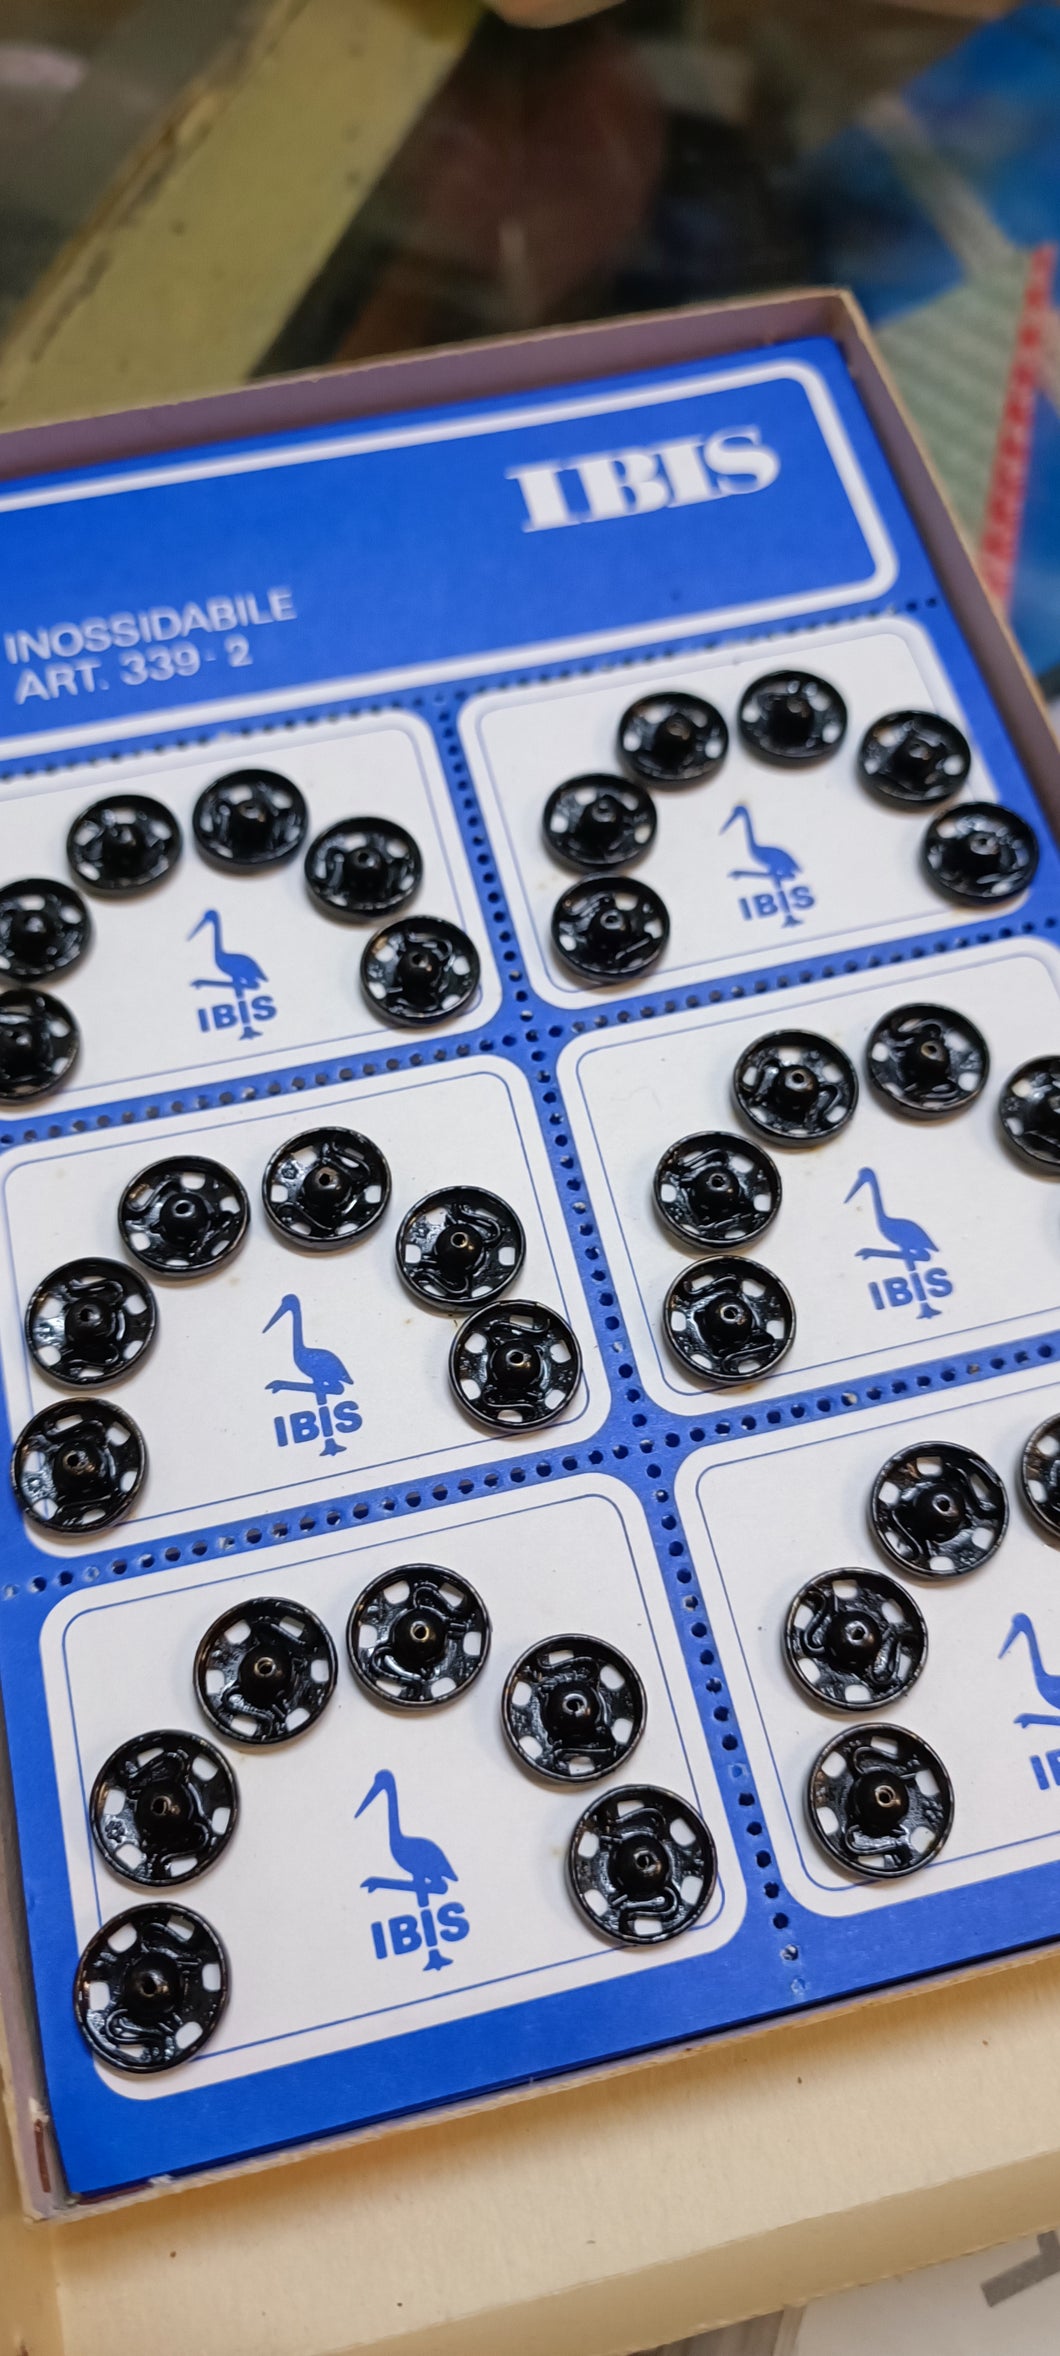 Bottoni automatici, 9mm, Ibis inossidabile, cartina da sei confezioni(36 pezzi).50g. €3,80.